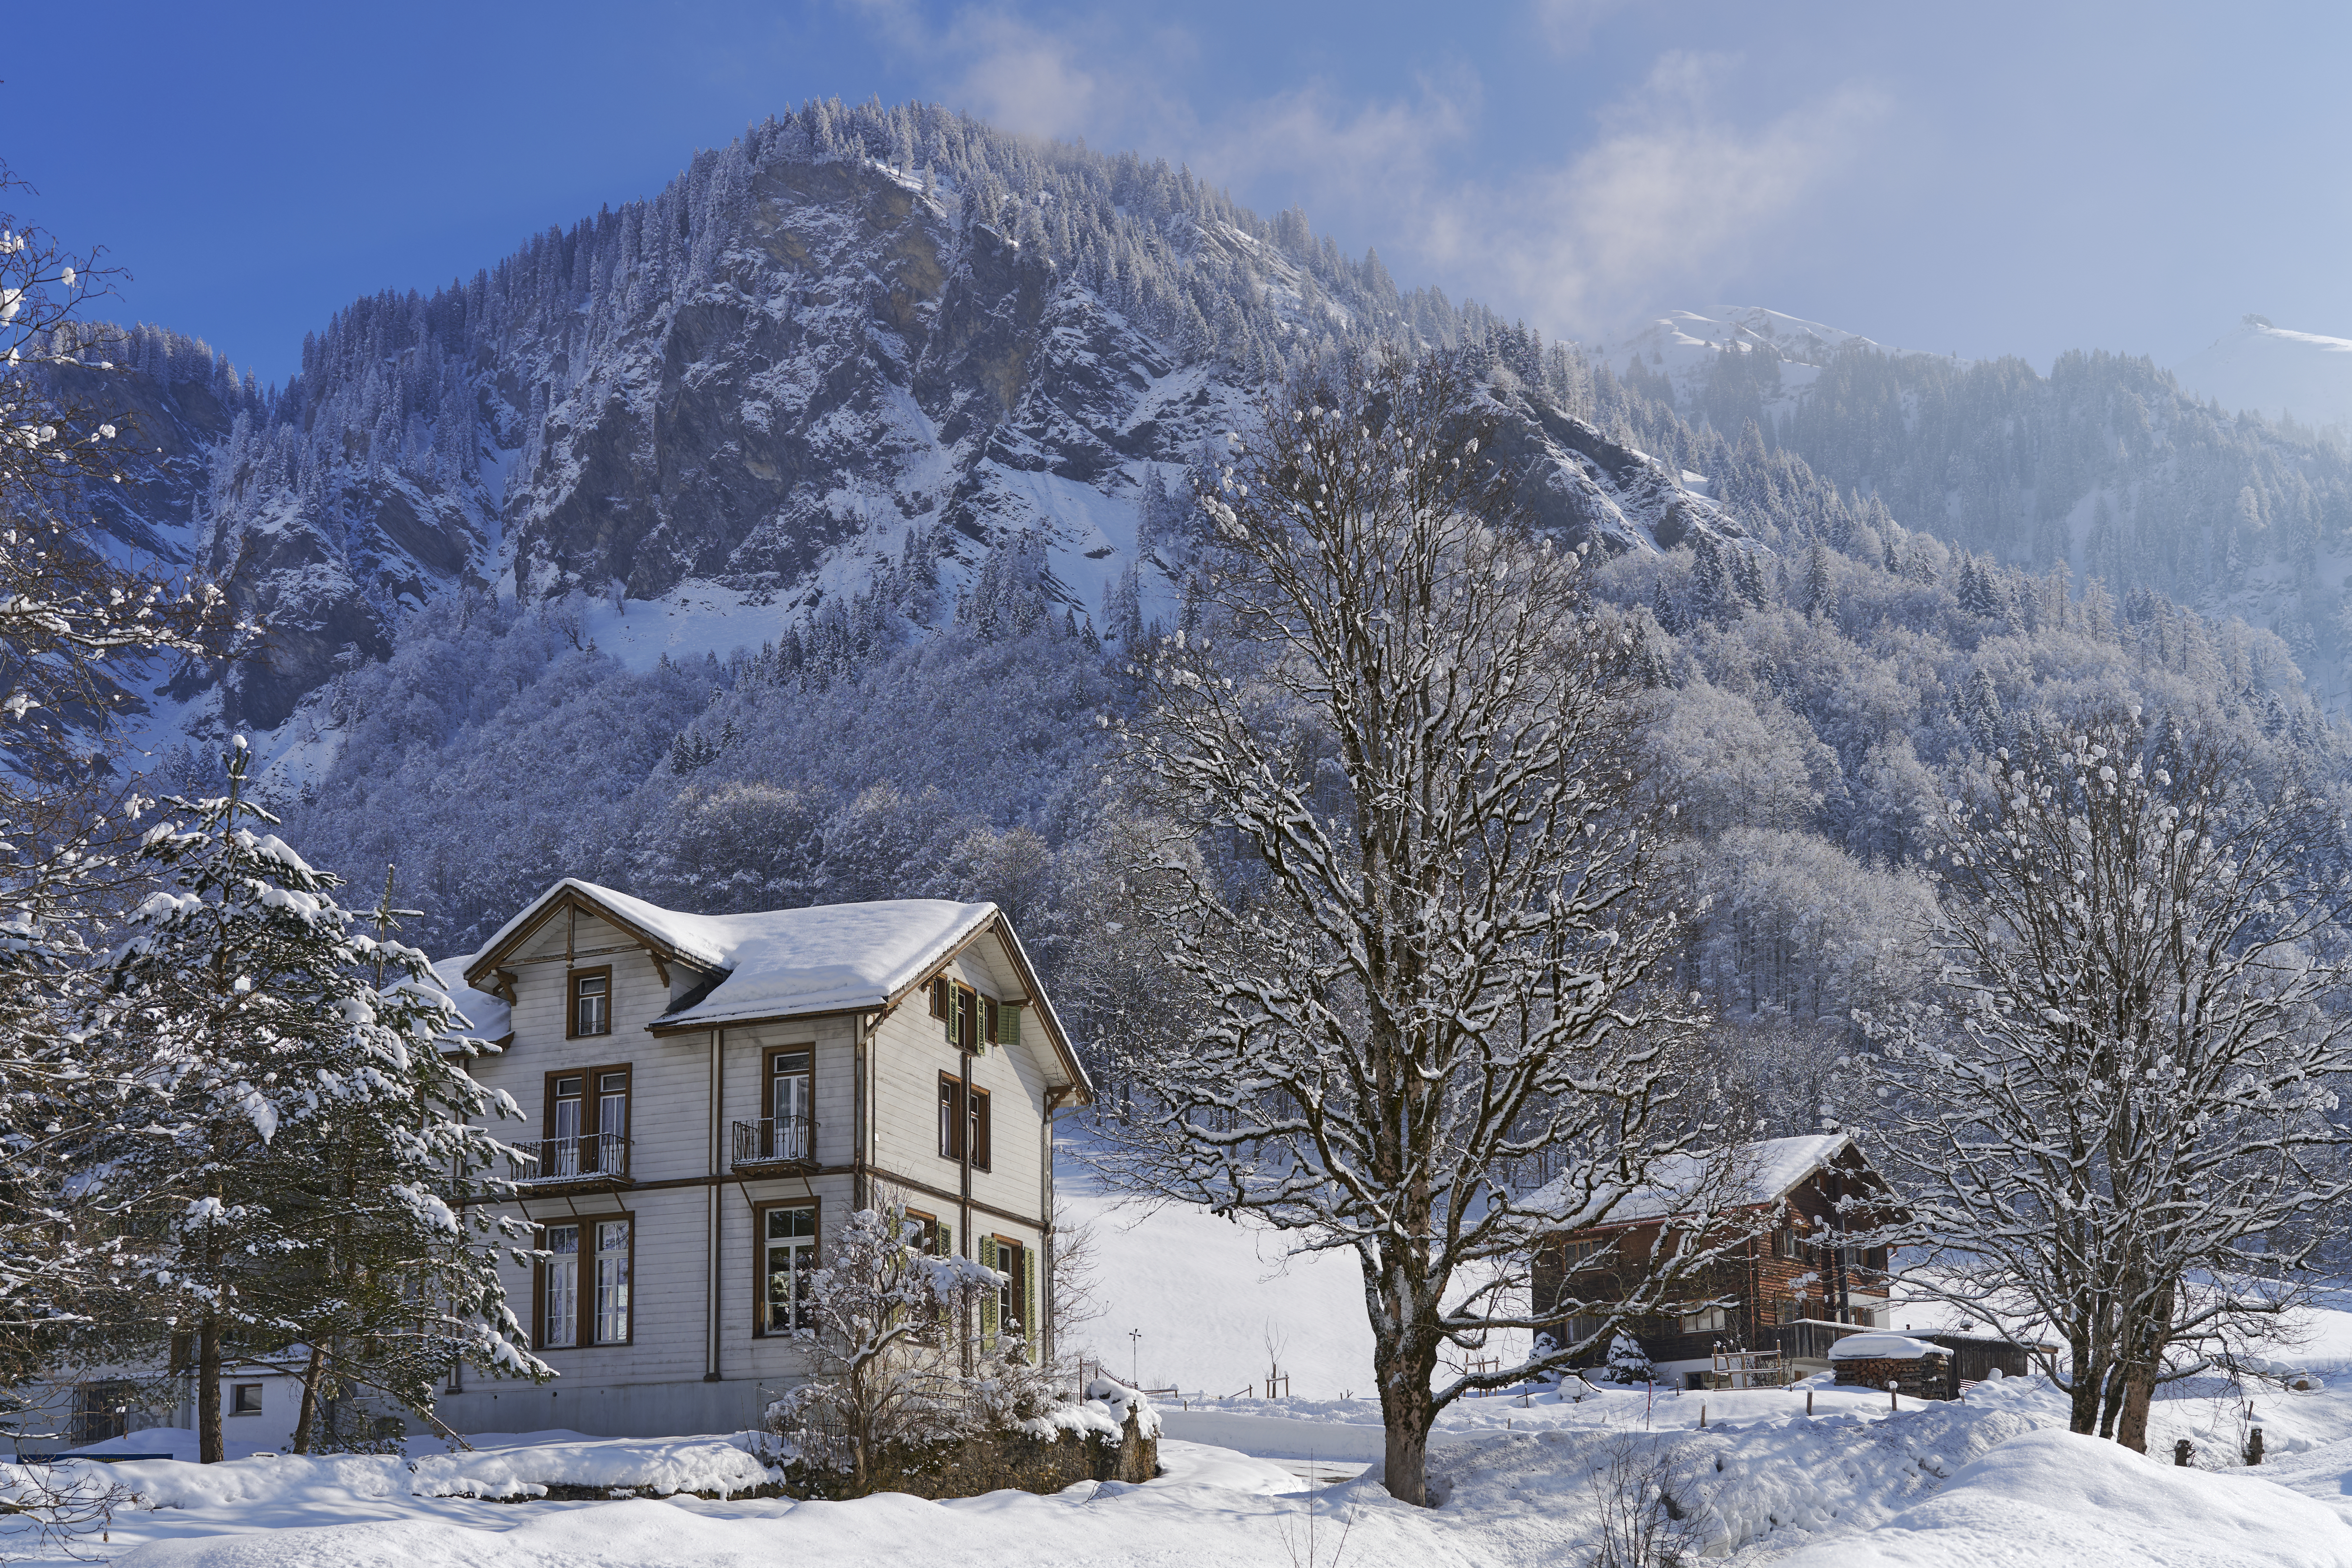  Das Hotel Alpenhof im Weisstannental